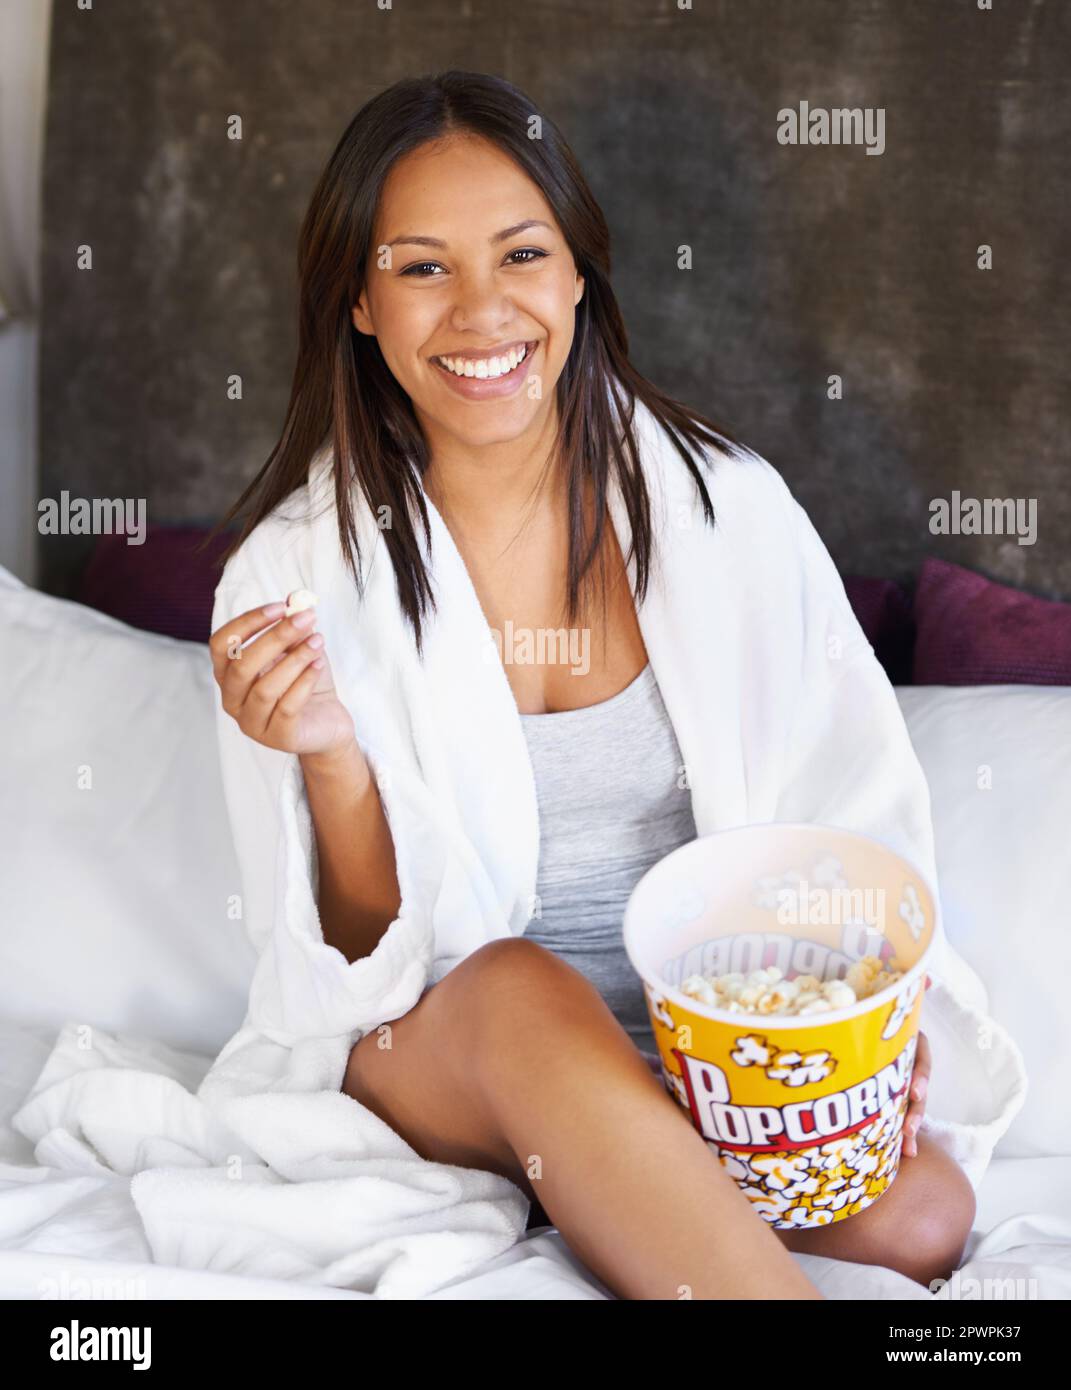 Ihr Heimkino-Snack. Porträt einer jungen Frau, die mit einer Schüssel Popcorn auf ihrem Bett sitzt. Stockfoto